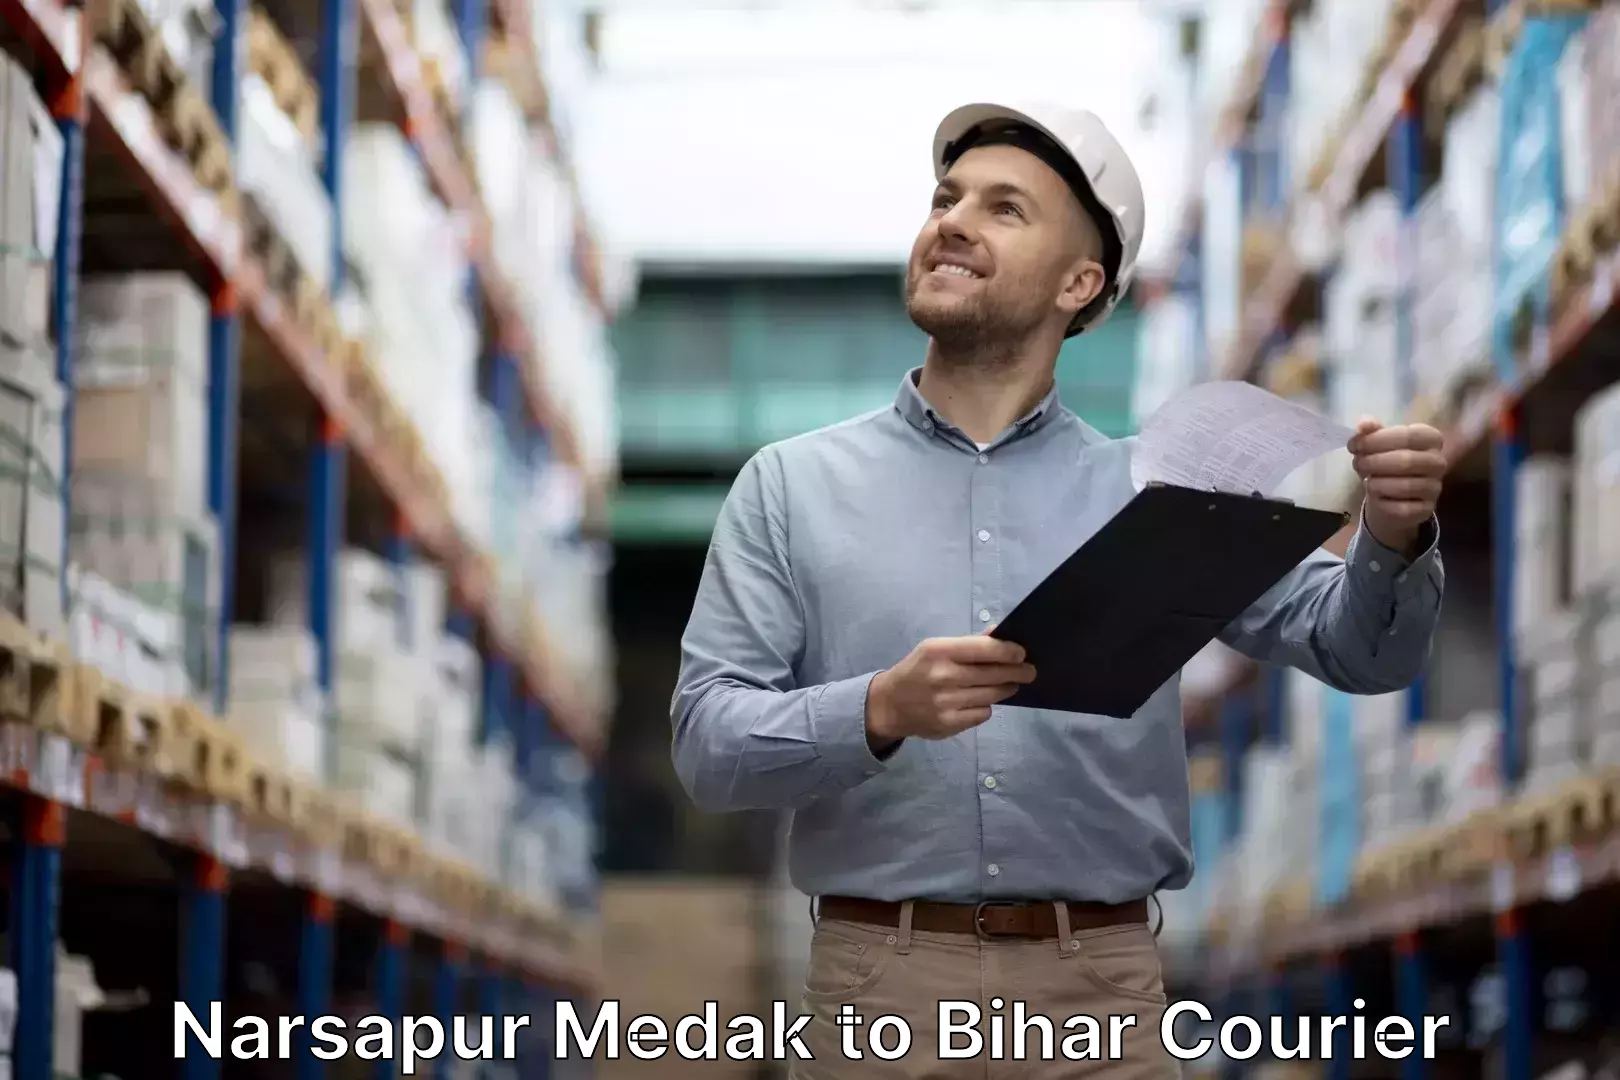 Luggage shipment tracking Narsapur Medak to Bihar